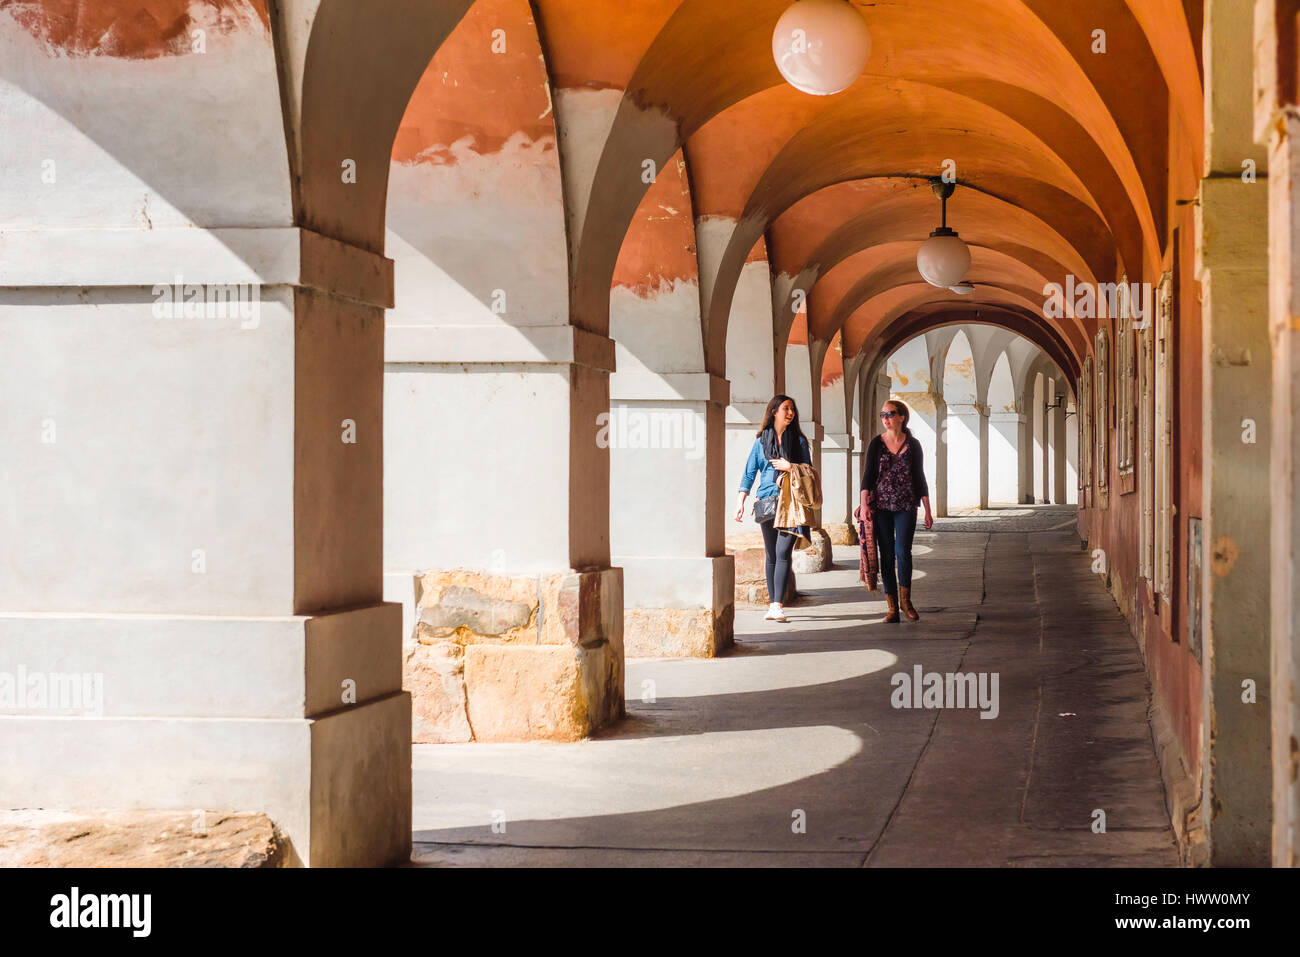 Centro storico di Praga, vista di due giovani donne che camminano attraverso un portico nel quartiere storico di Hradcany di Praga, Repubblica Ceca. Foto Stock